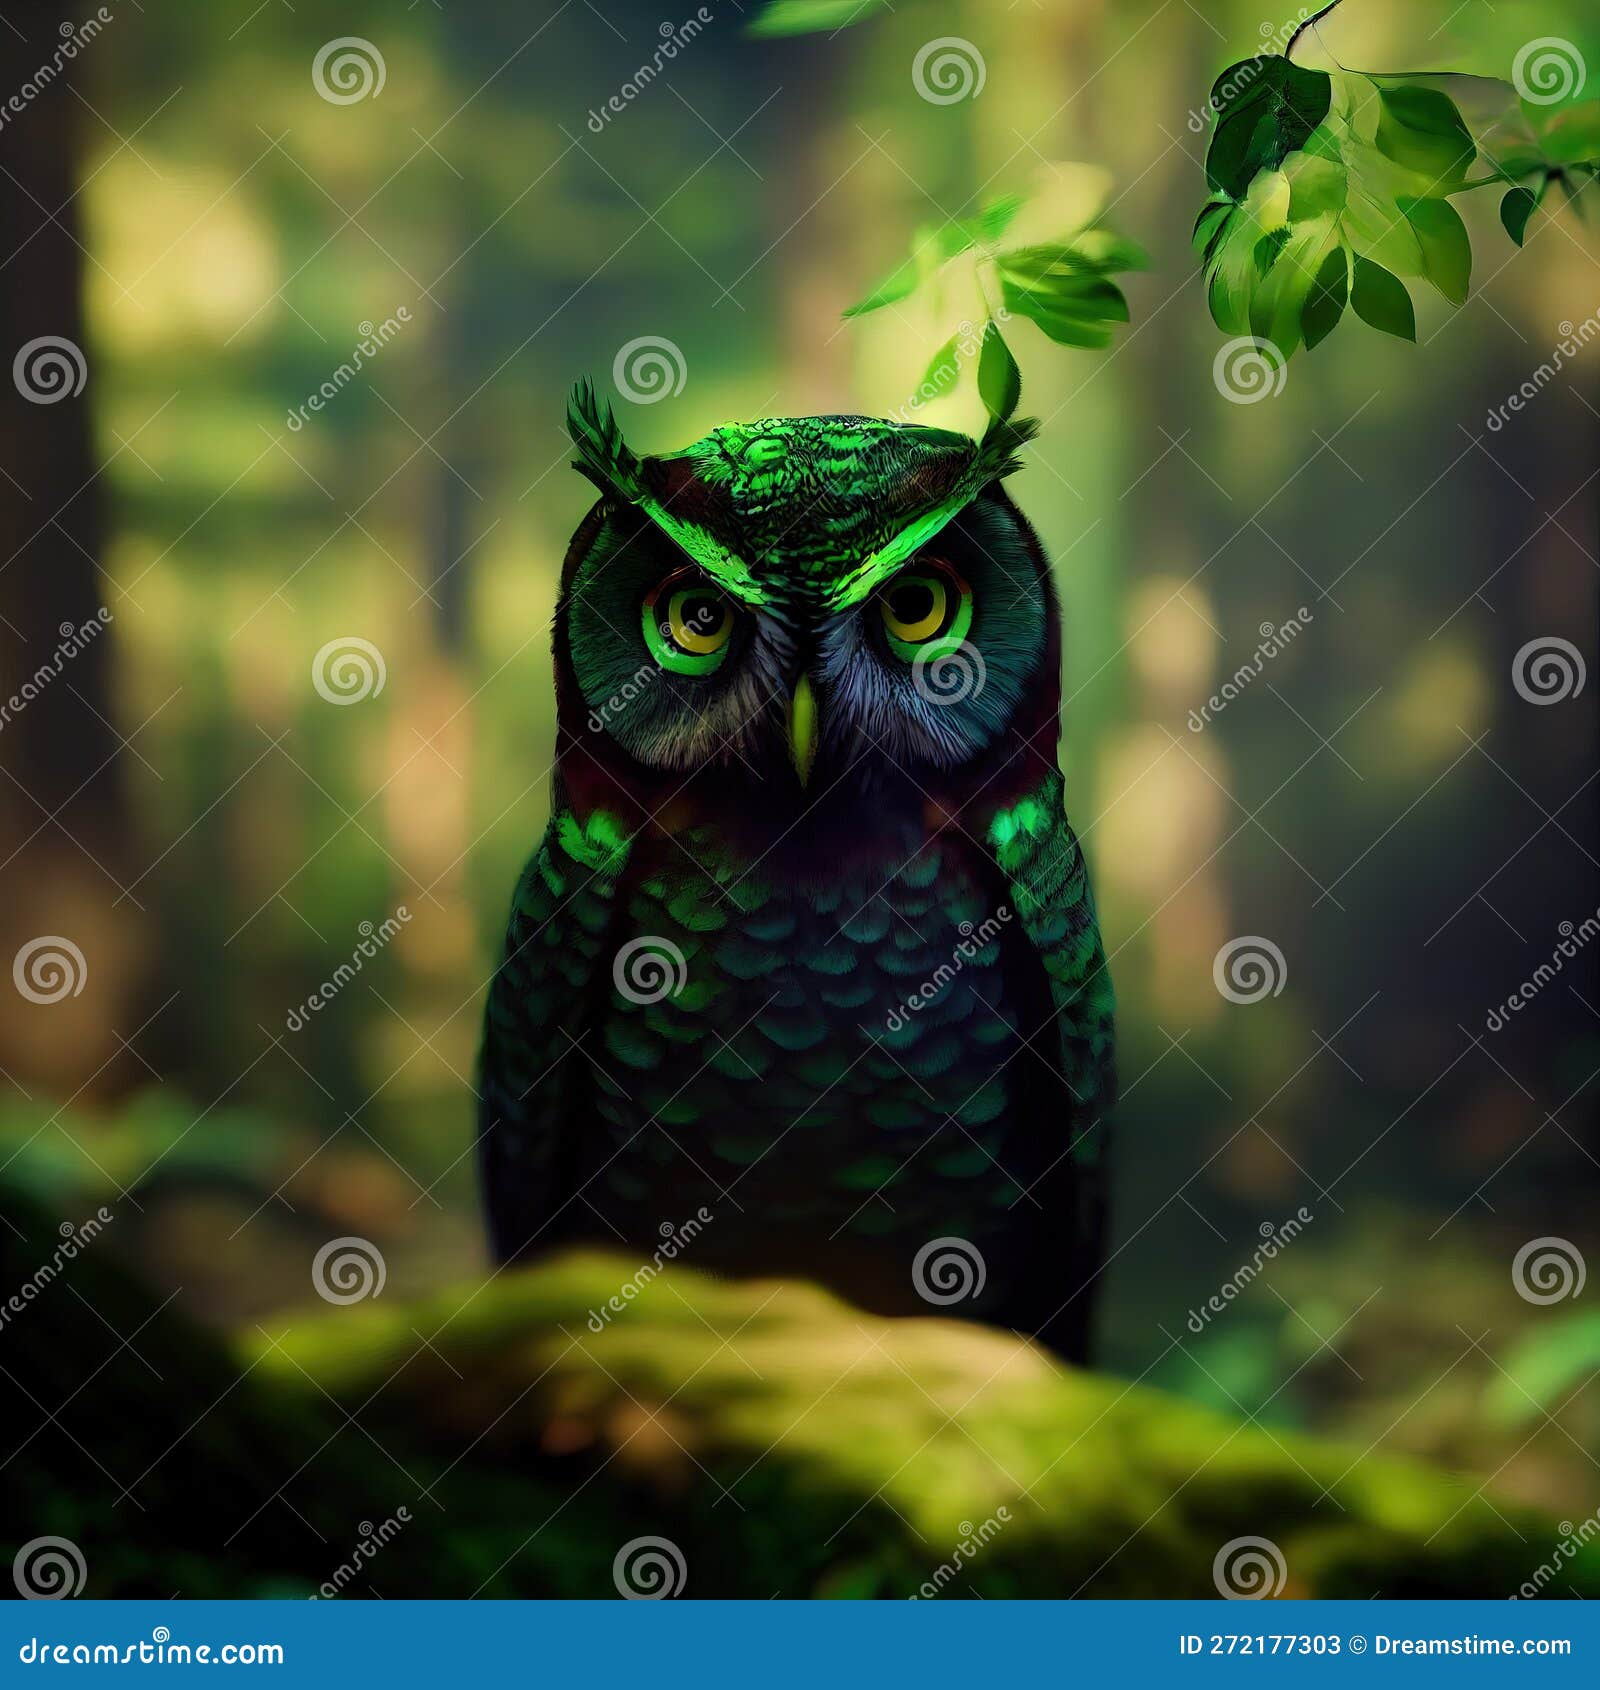 Green Owl face